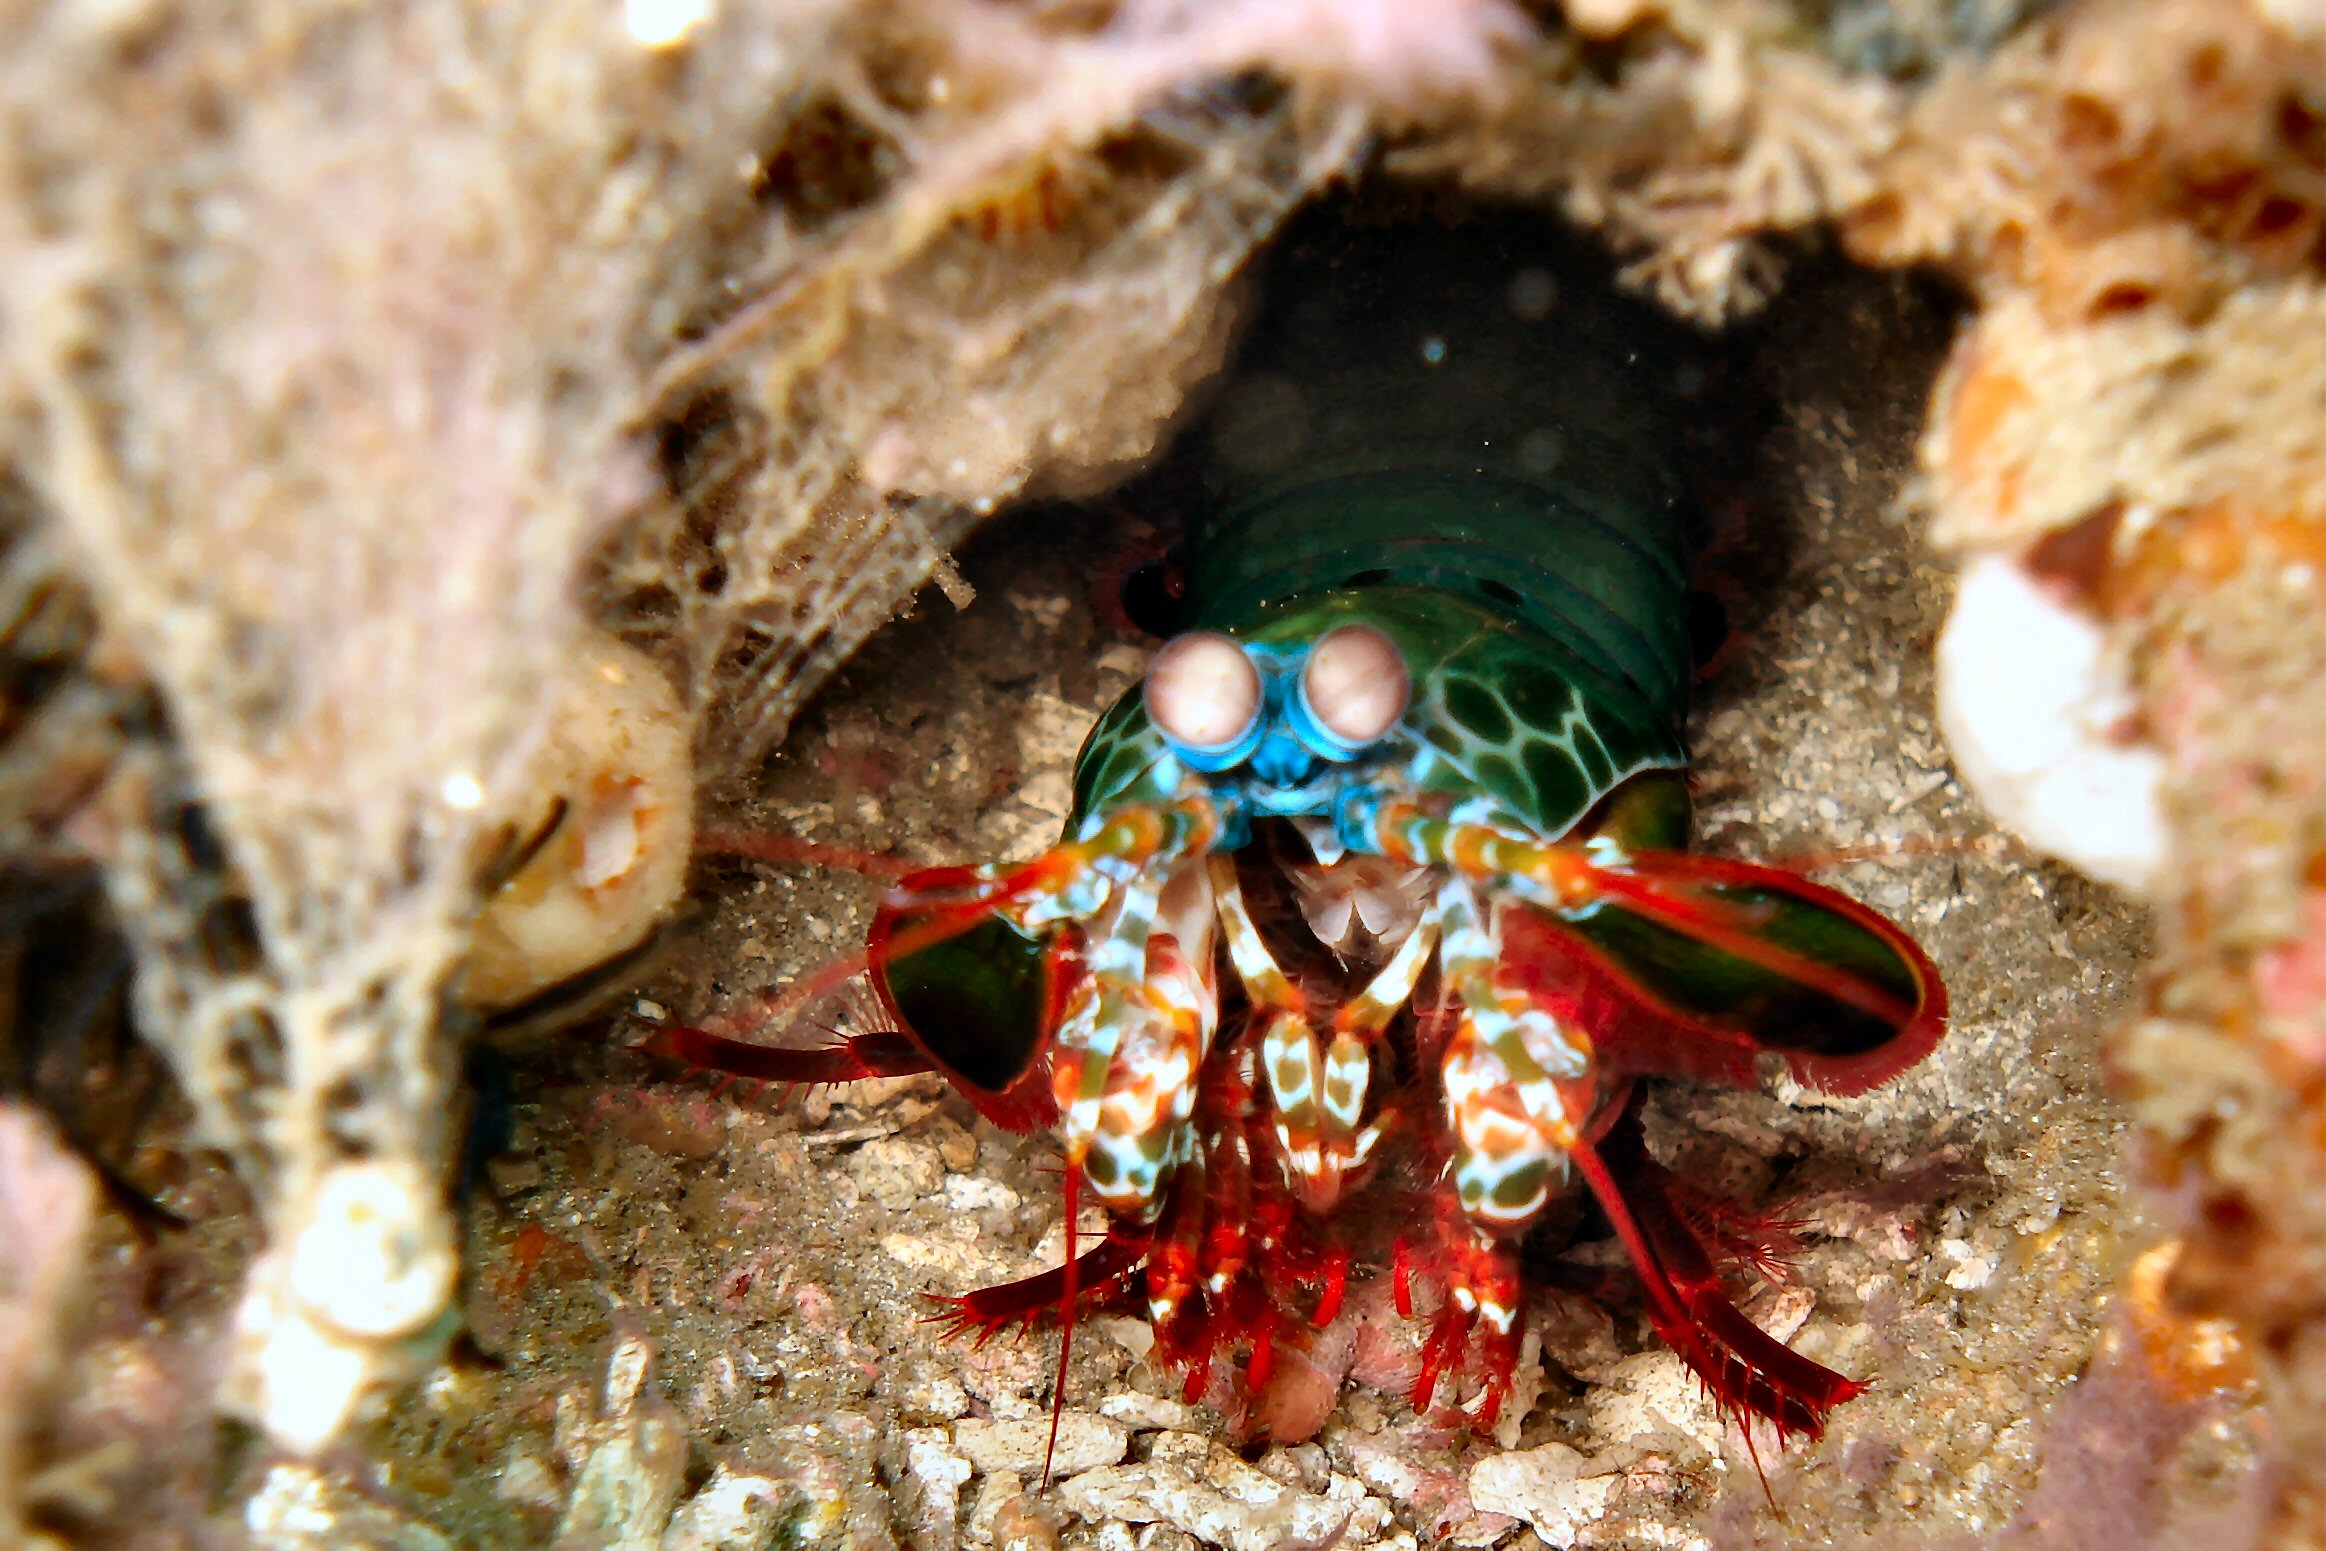 A Mantis Shrimp trying to be tough